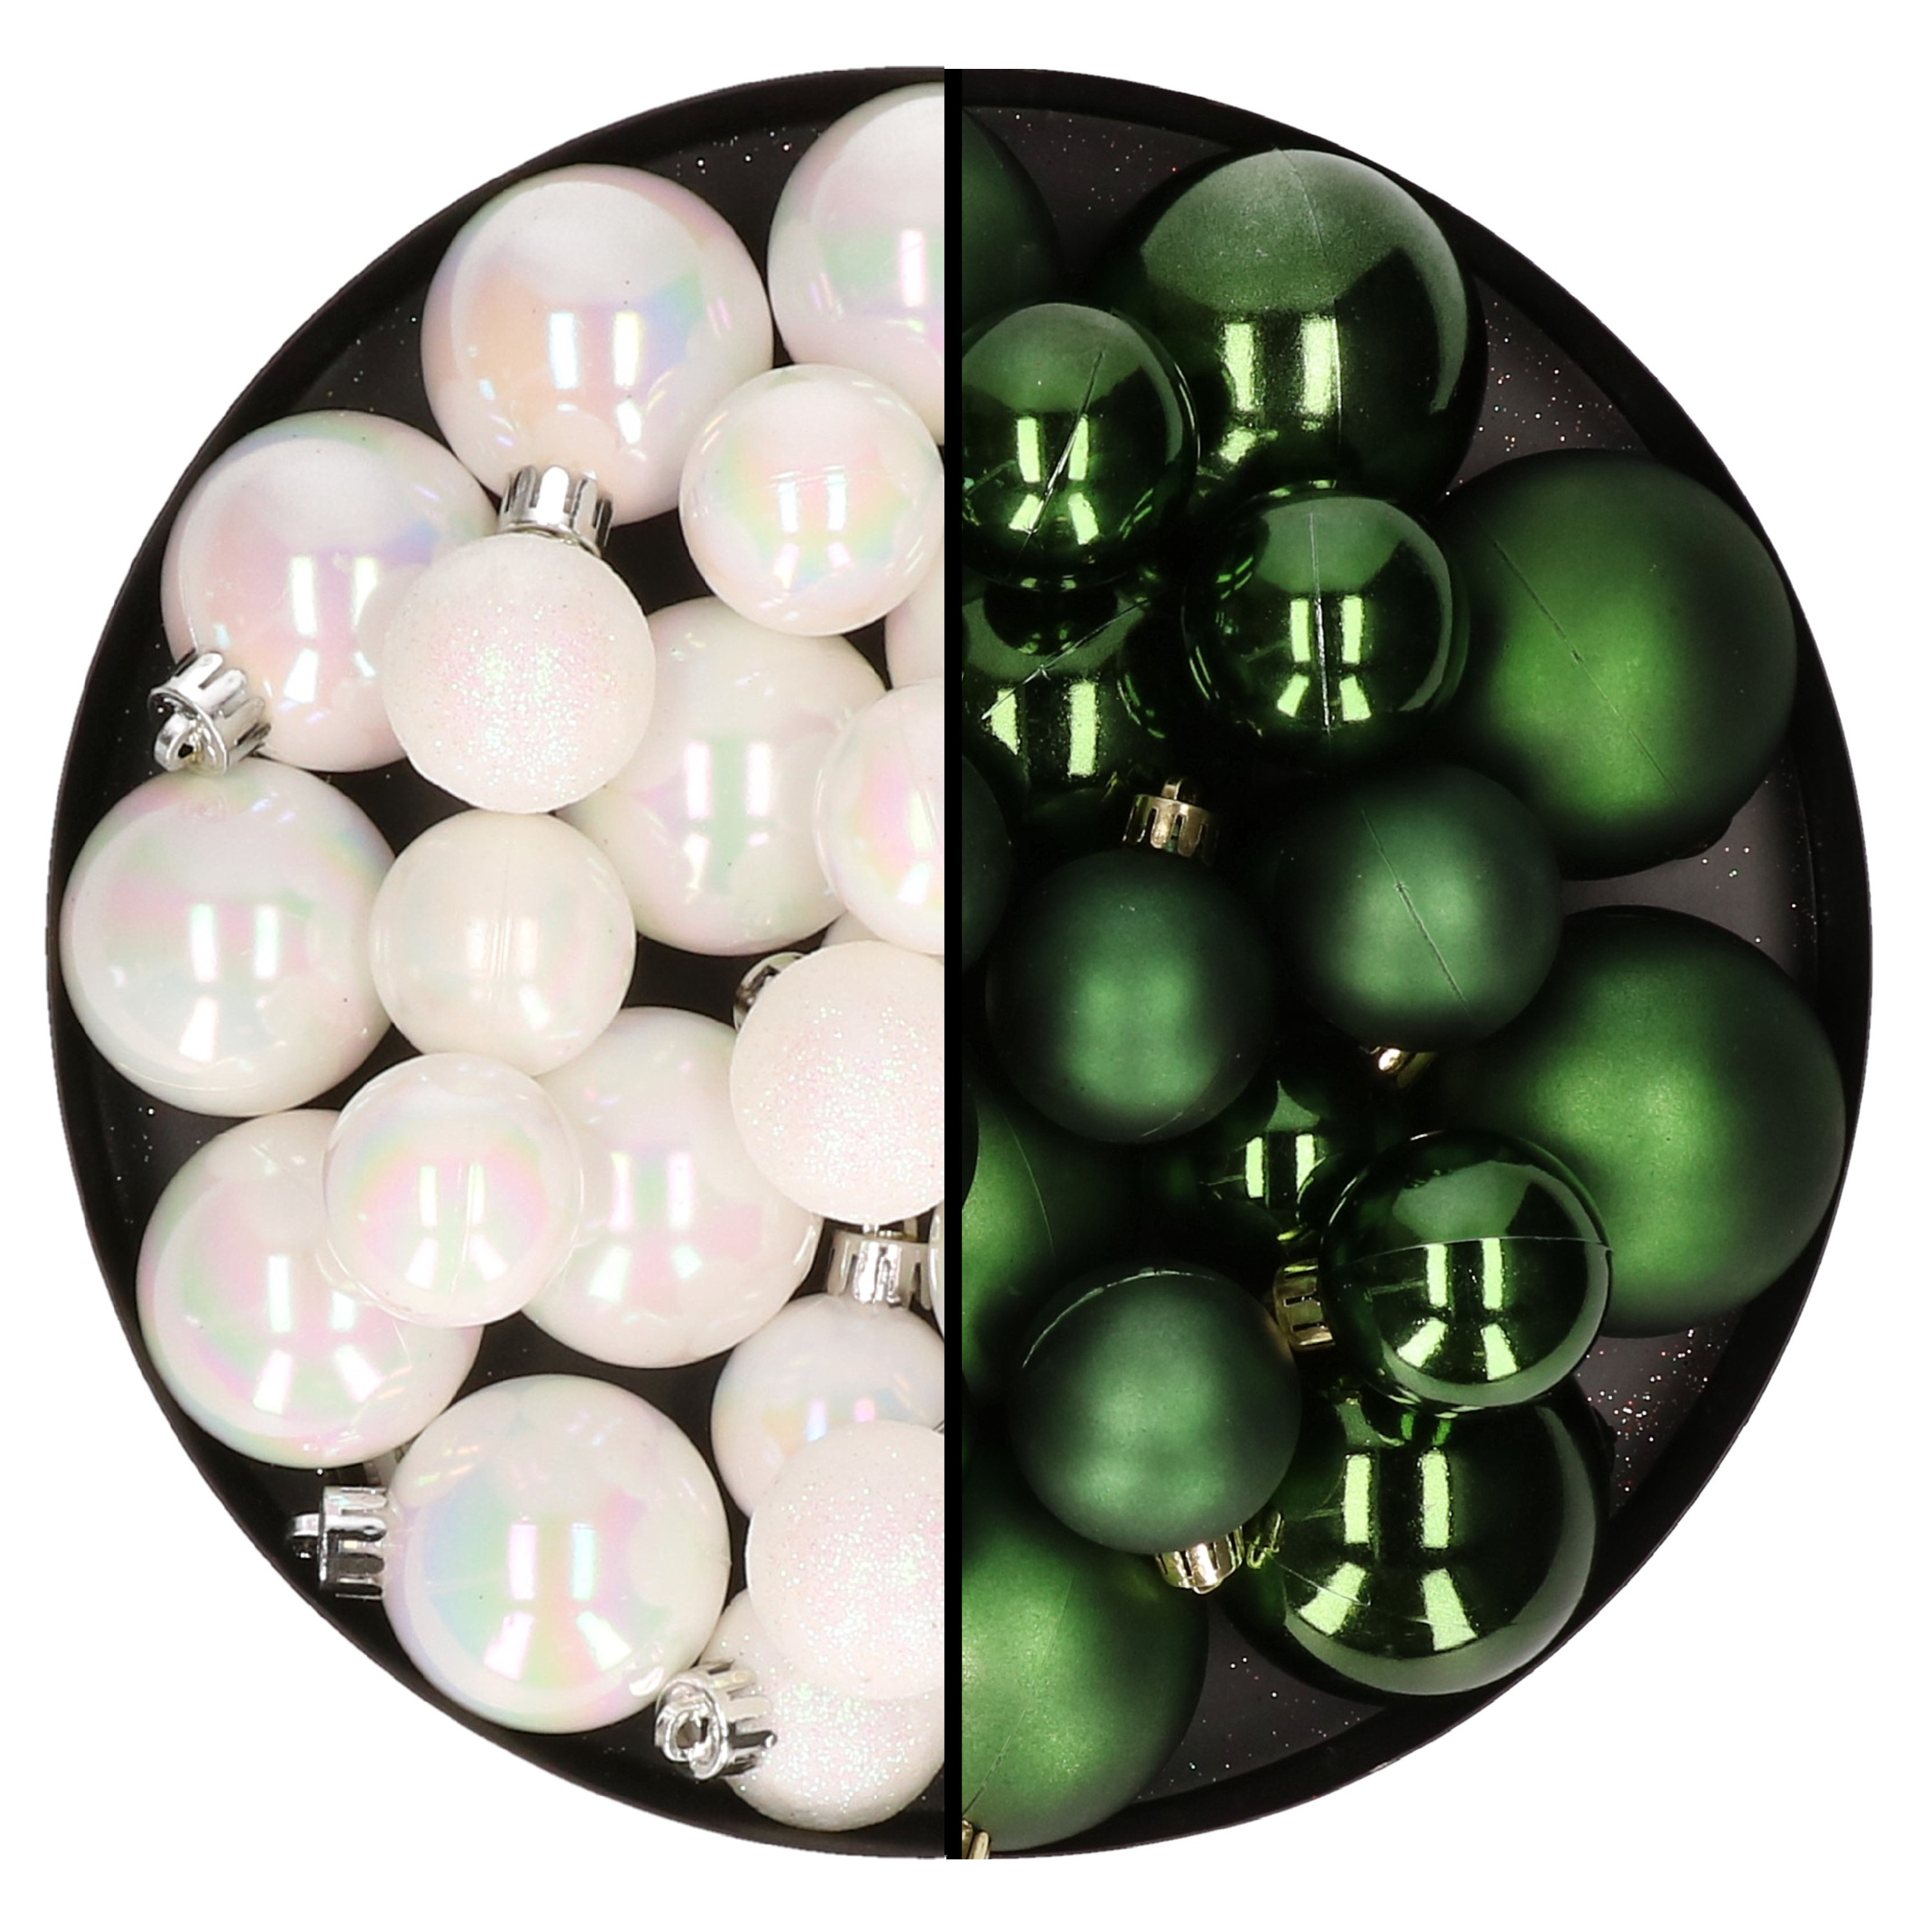 Kerstversiering kunststof kerstballen mix parelmoer wit-donkergroen 6-8-10 cm pakket van 44x stuks